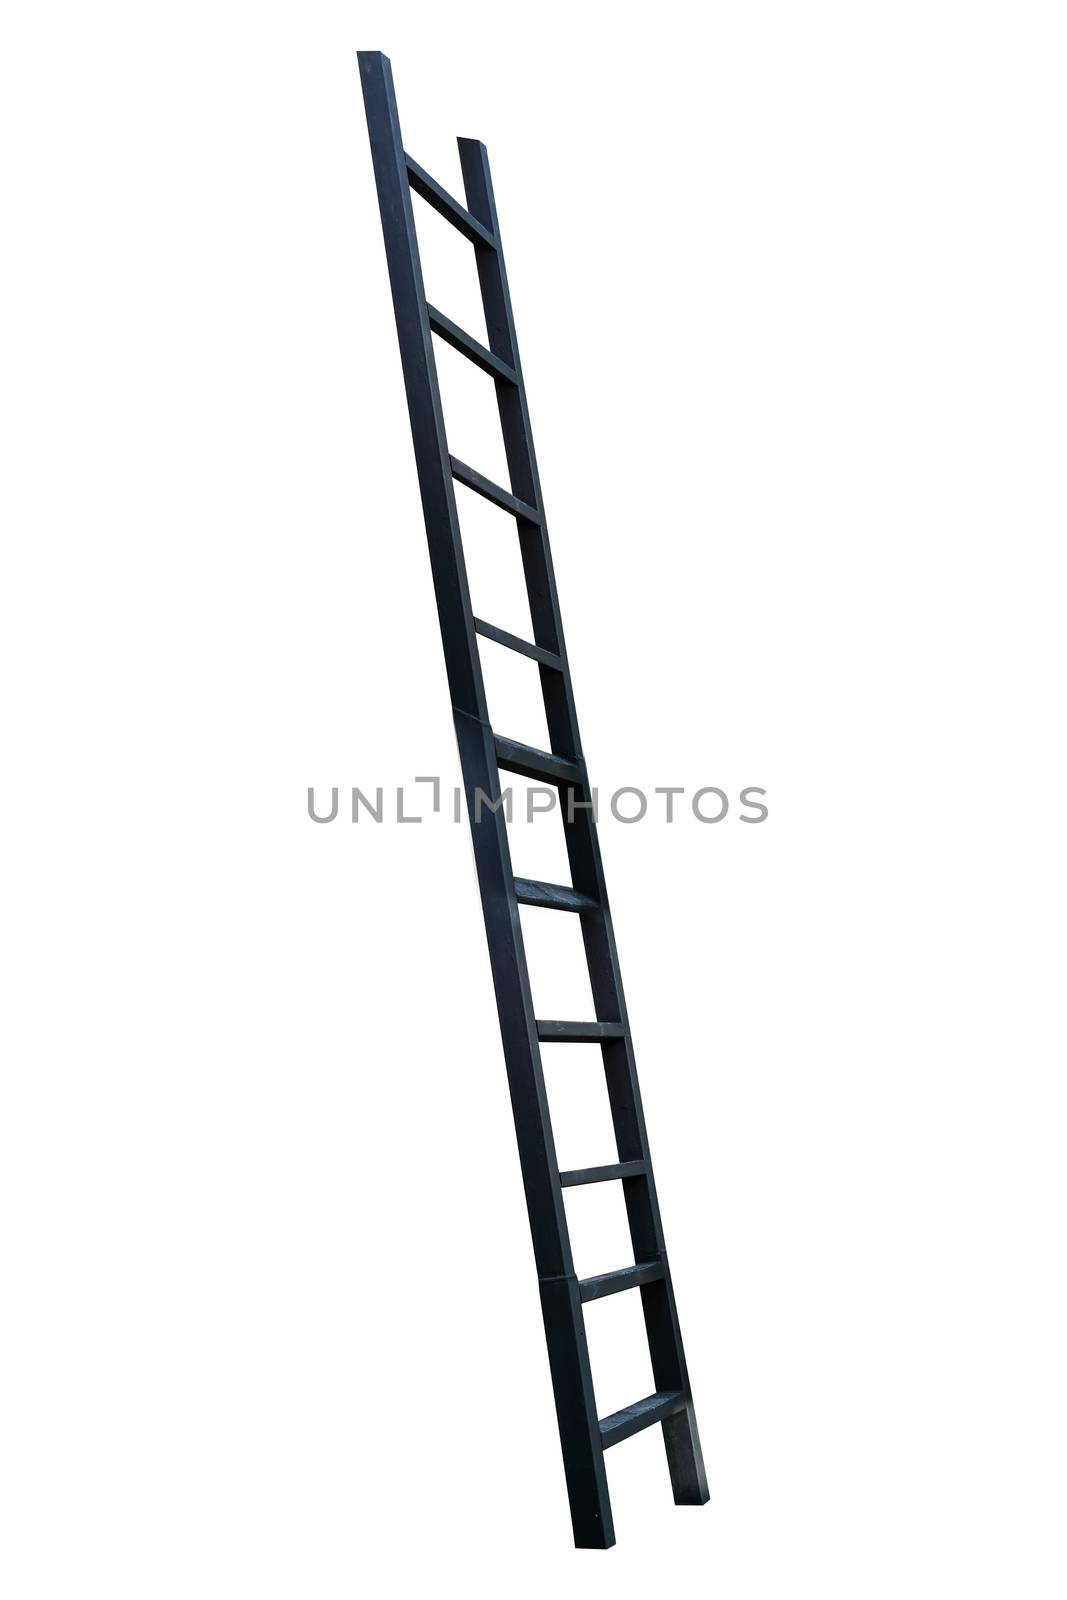 black ladder on white background by Surasak